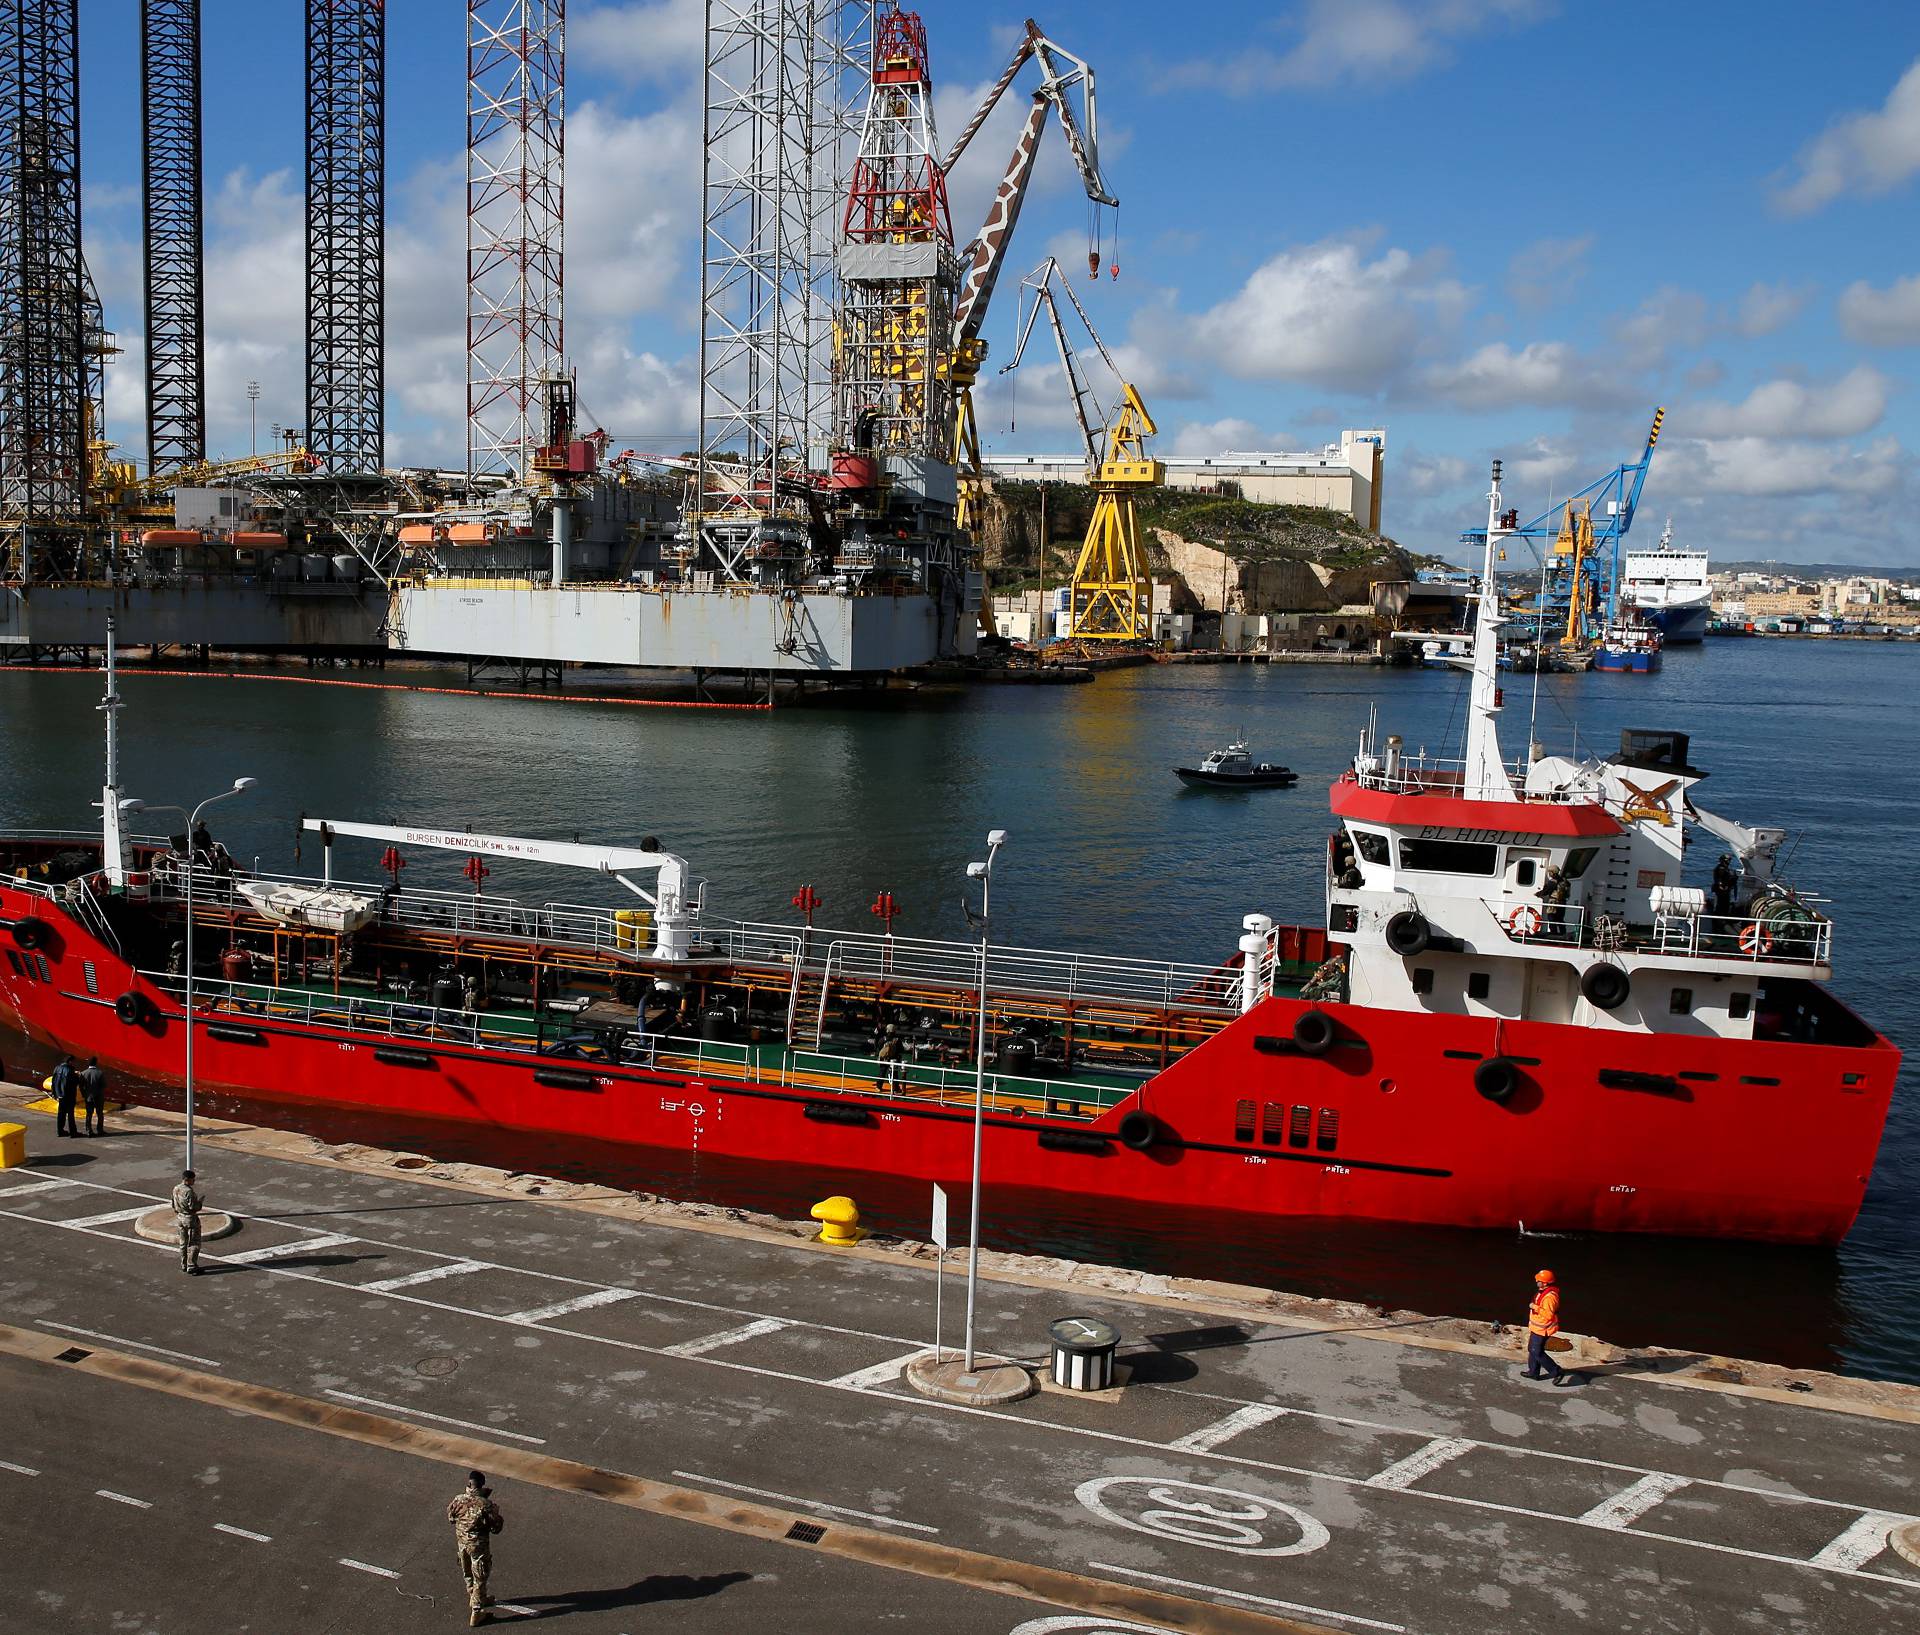 Merchant ship Elhiblu 1 arrives in Senglea, in Valletta's Grand Harbour